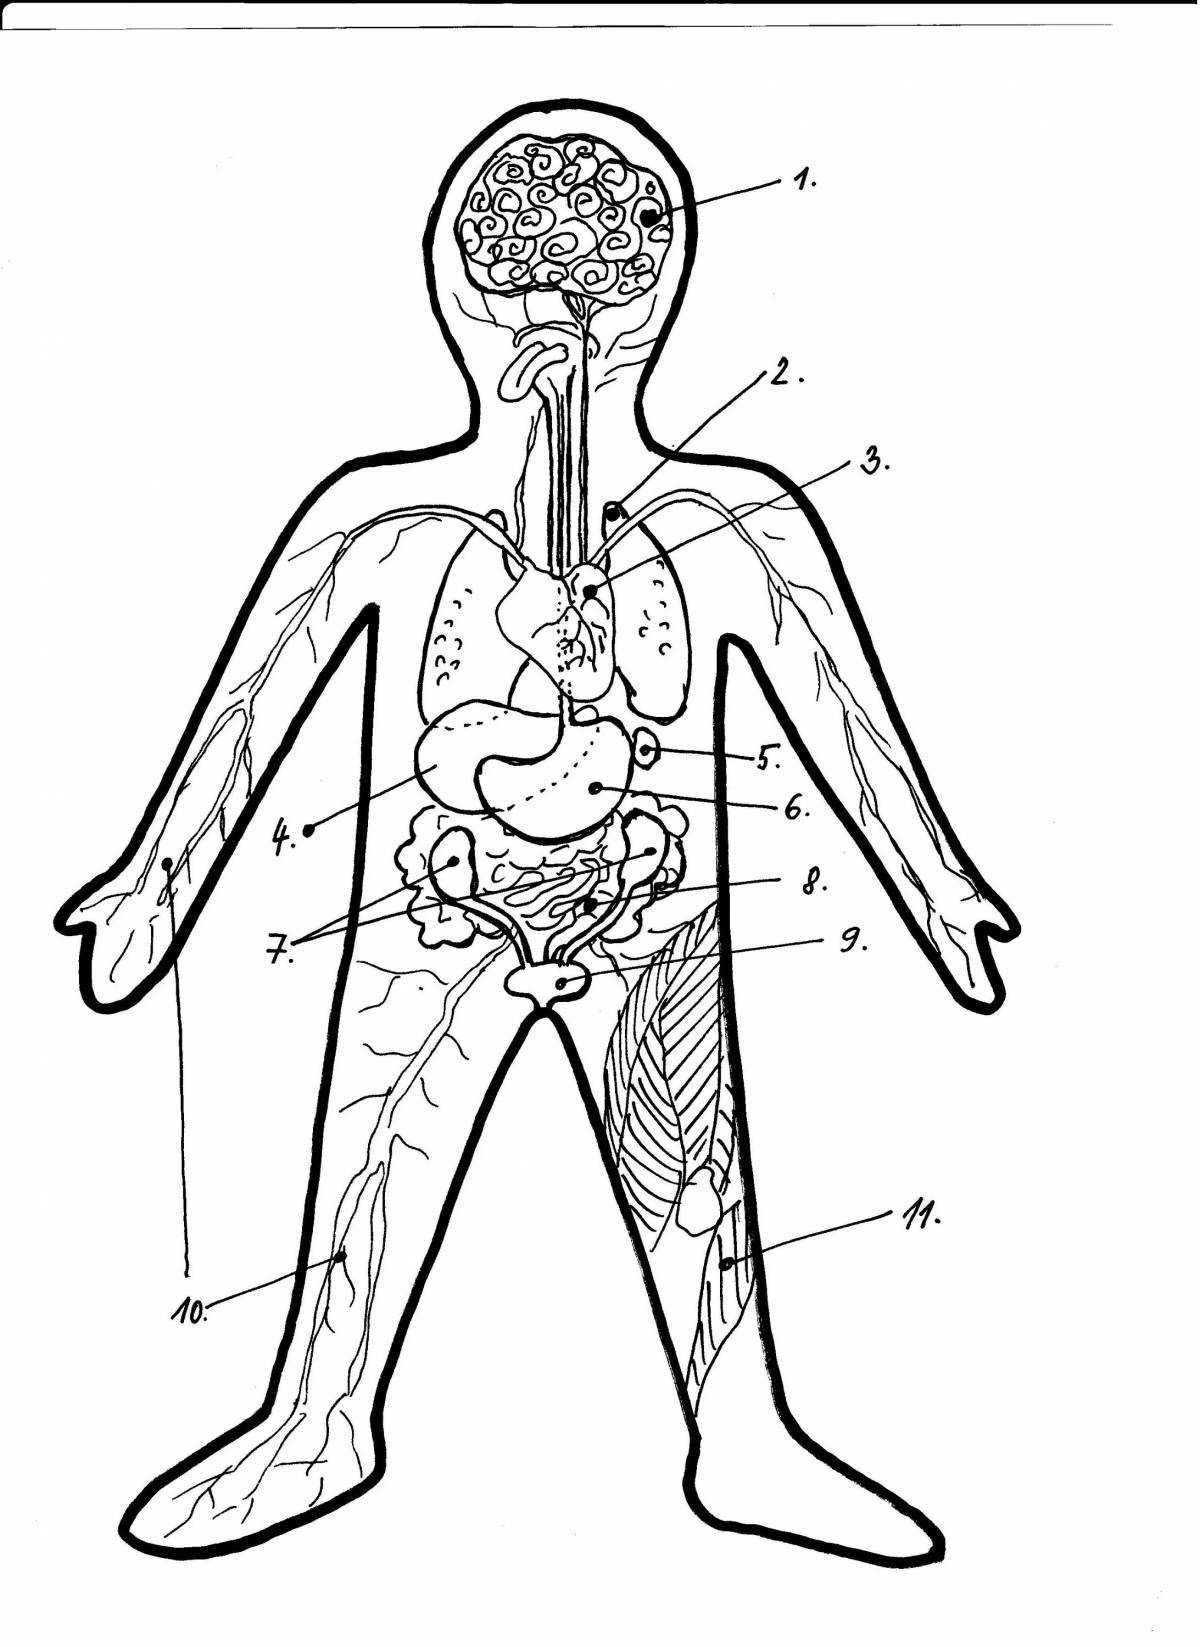 Выдающаяся раскраска человеческого тела с внутренними органами